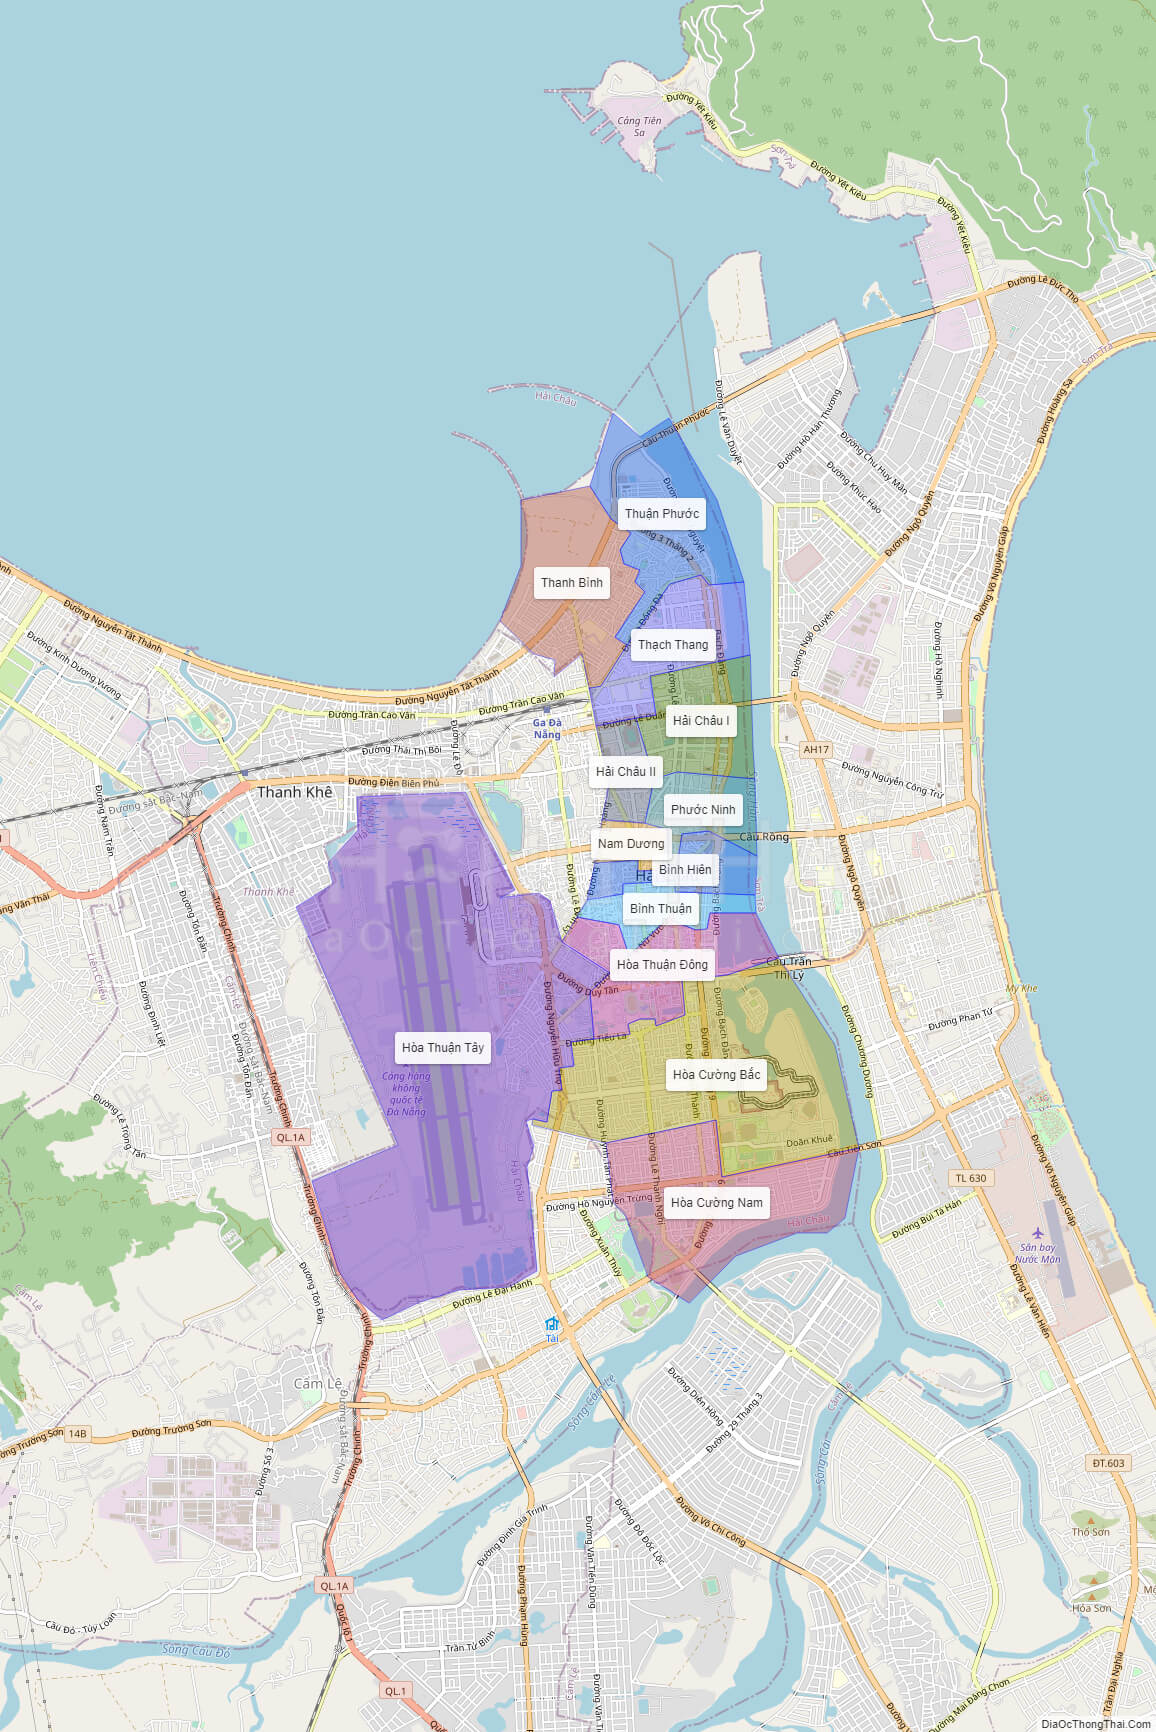 Hãy tham quan các khu đô thị mới trên bản đồ mở rộng Đà Nẵng 2024 để tìm hiểu các khu vực dân cư mới nhất, cơ sở hạ tầng hoàn thiện và các khu vực thương mại sầm uất. Sẵn sàng khám phá và trải nghiệm sự phát triển đầy tiềm năng của Đà Nẵng.